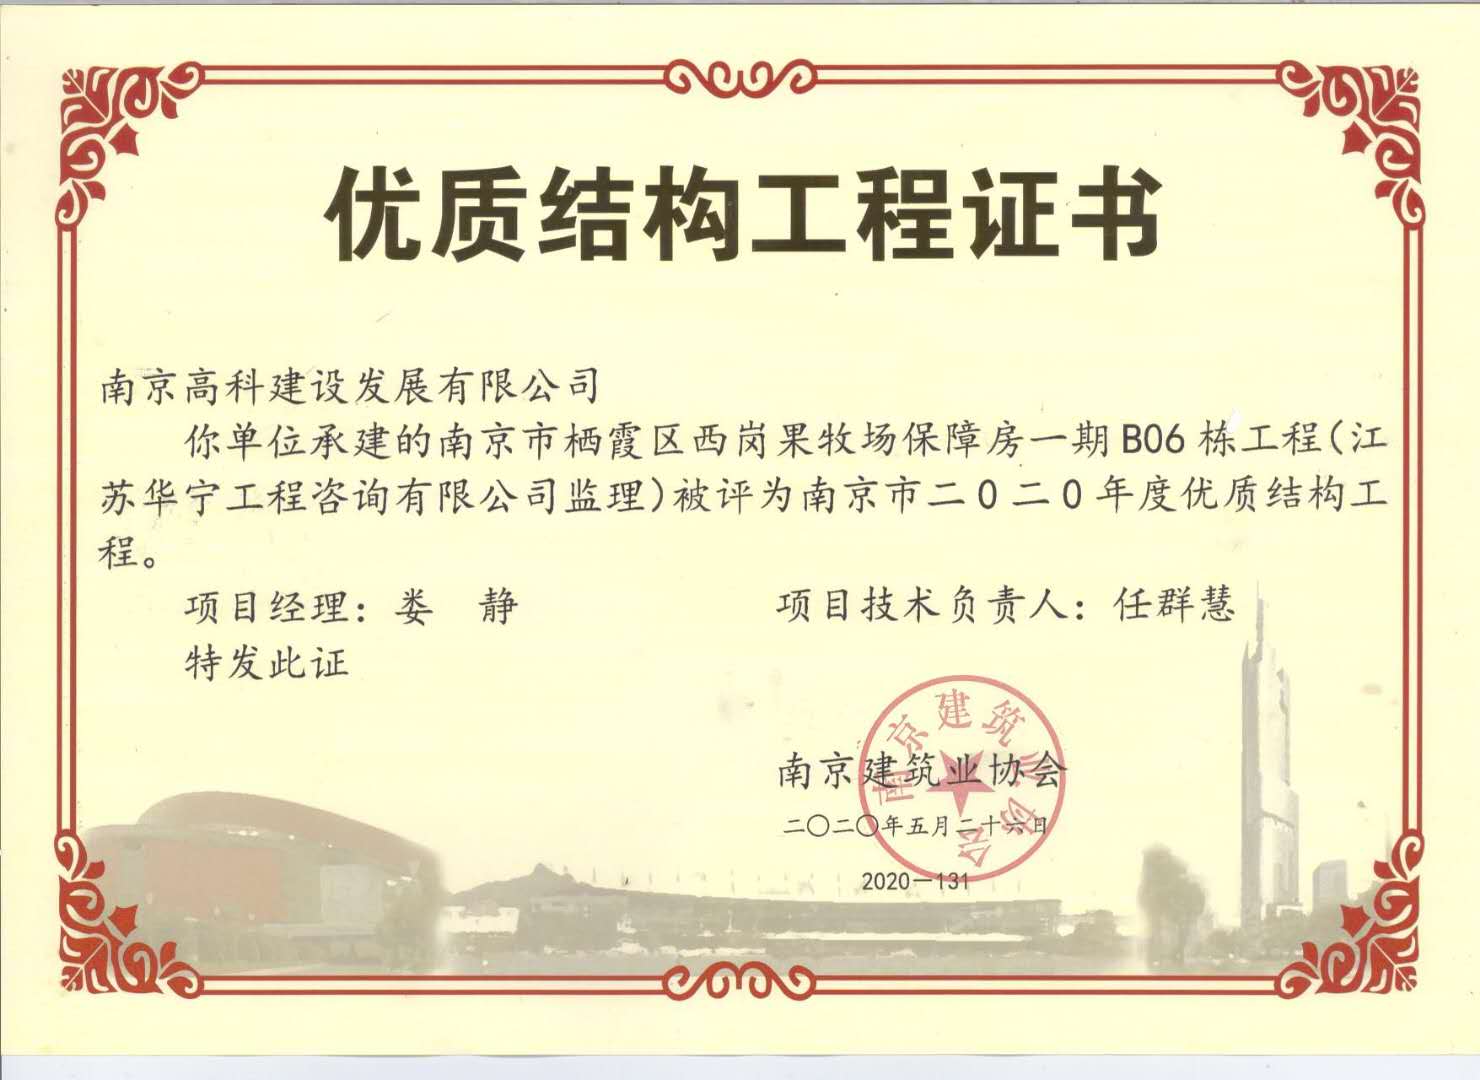 2020年度南京市优质结构工程（南京市栖霞区西岗果牧场保障房一期B06栋工程）